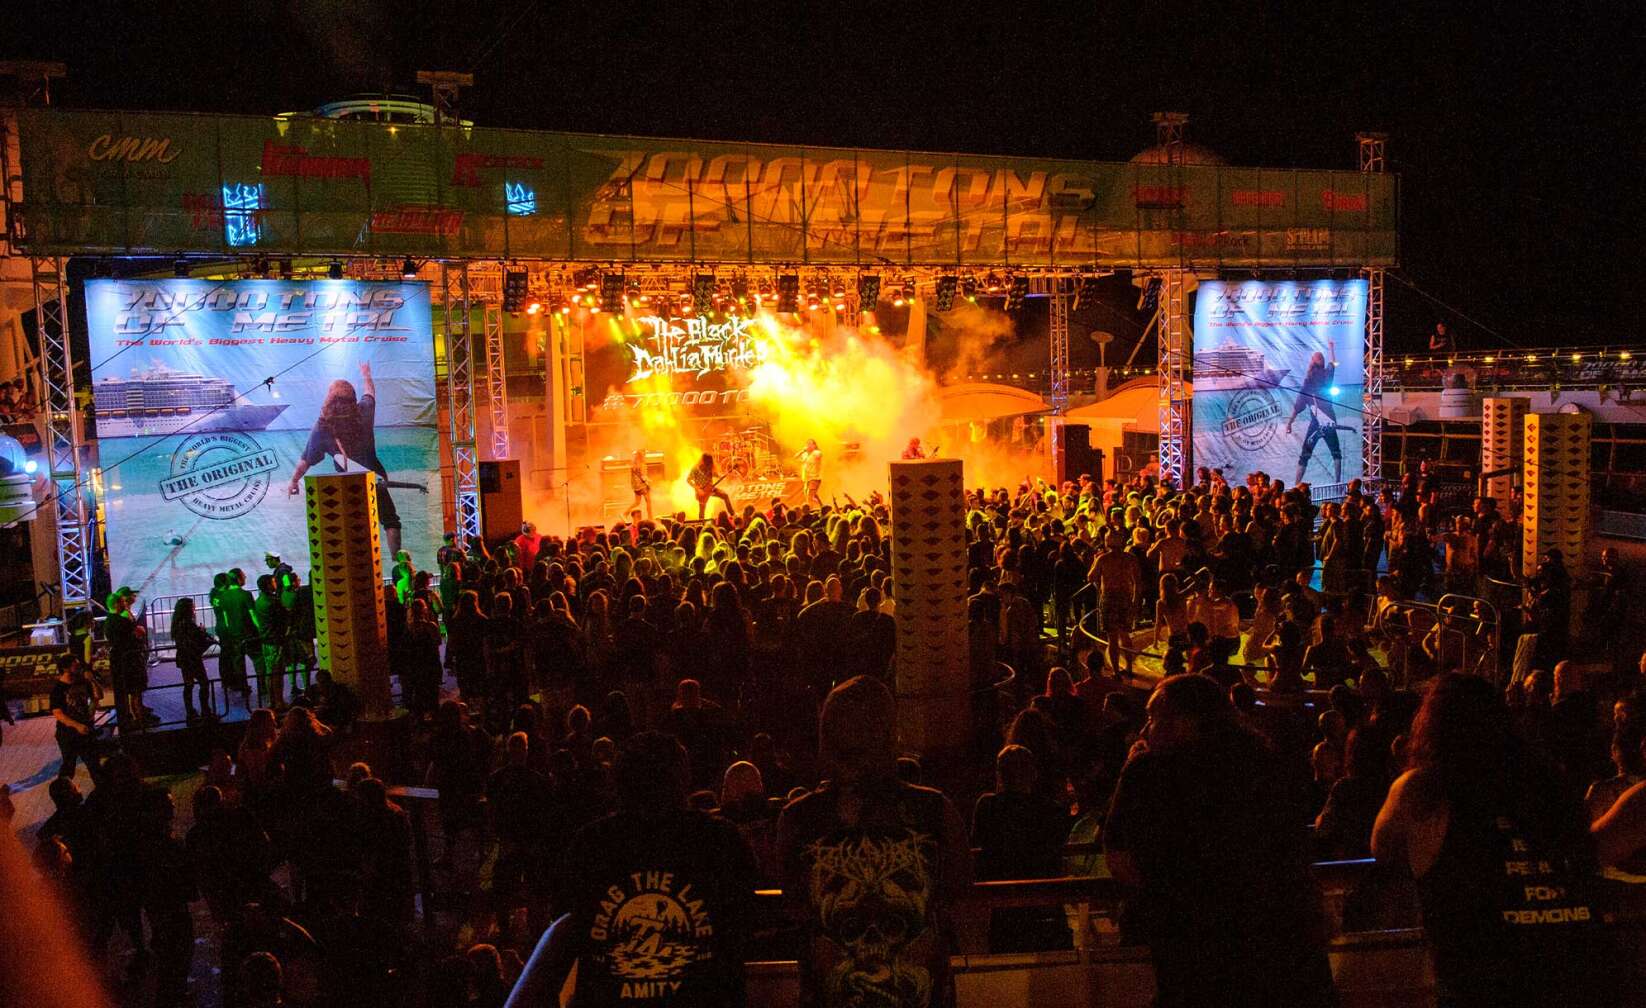 Bilder der 70000 Tons of Metal - die Bühne bei Nacht von schräg oben fotografiert